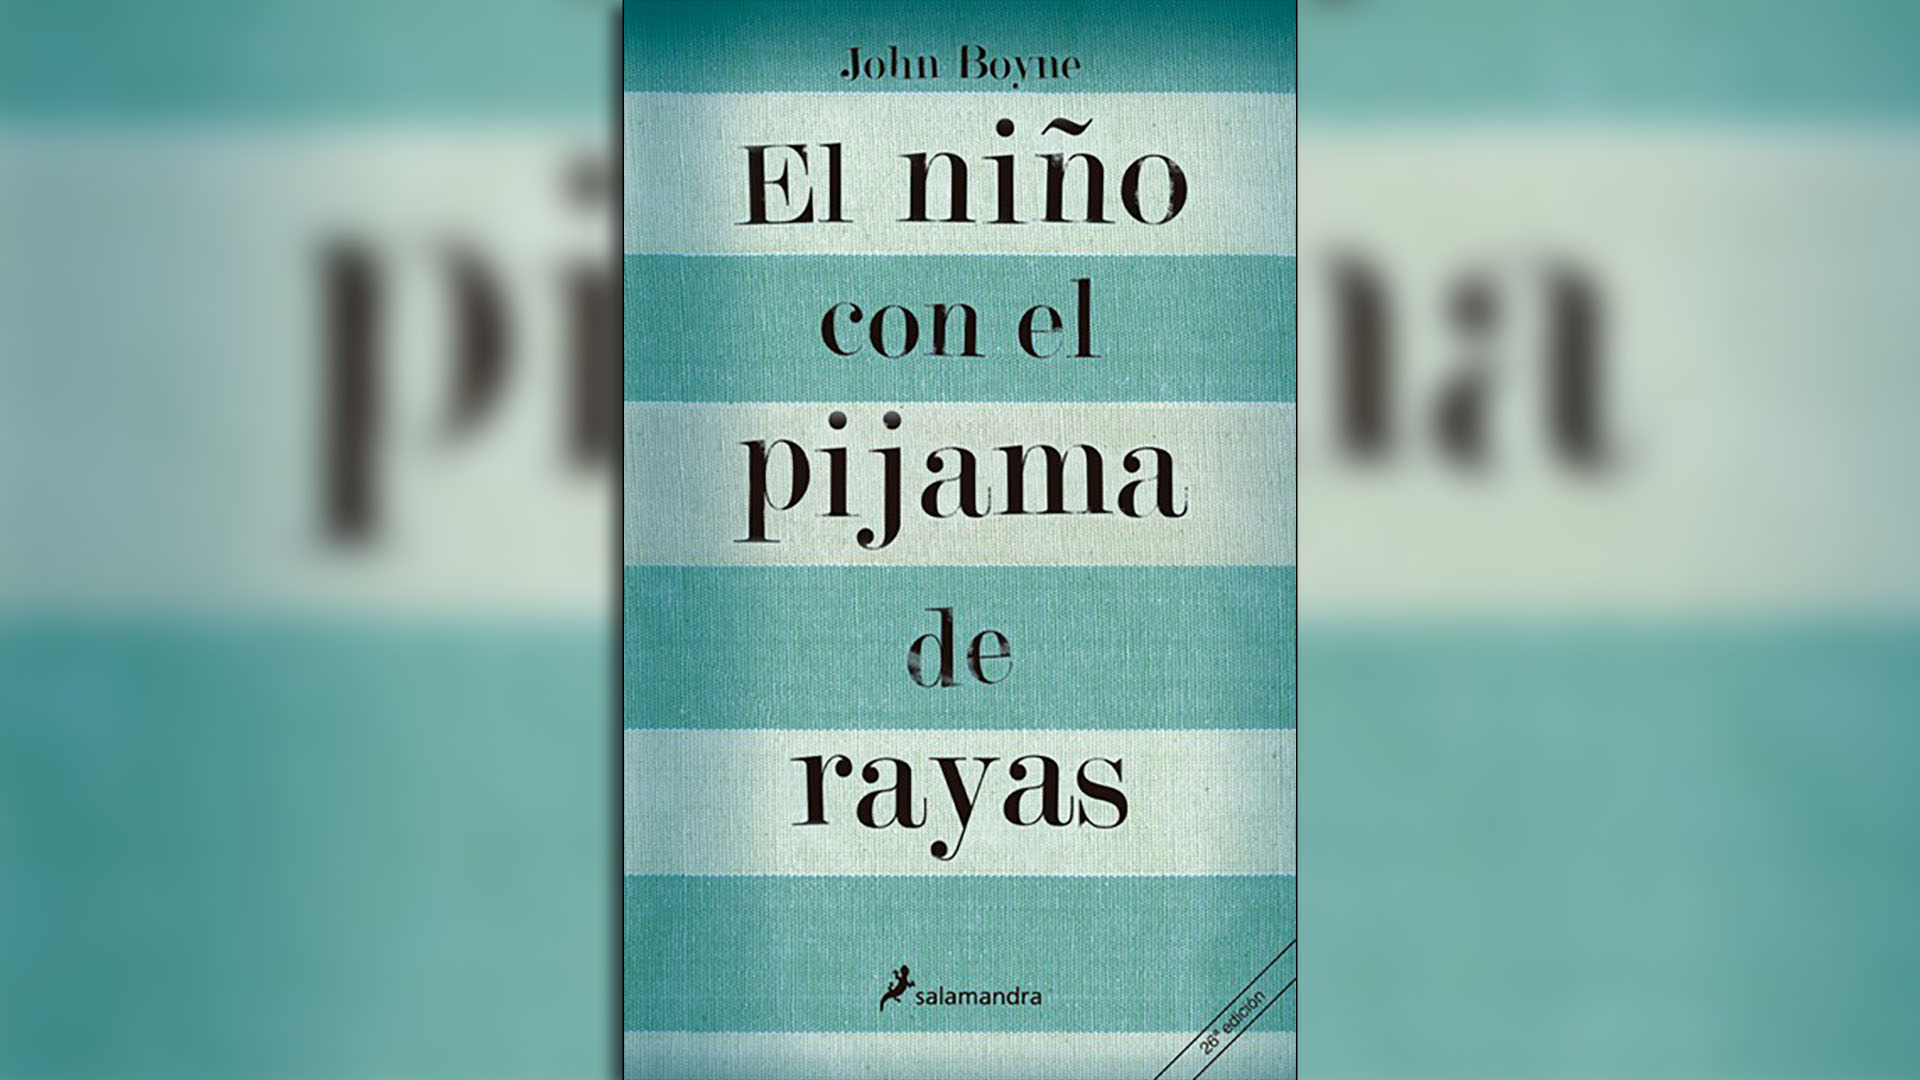 El libro escrito por John Boyne es ampliamente utilizado en las escuelas de Reino Unido para enseñar sobre el Holocausto. 